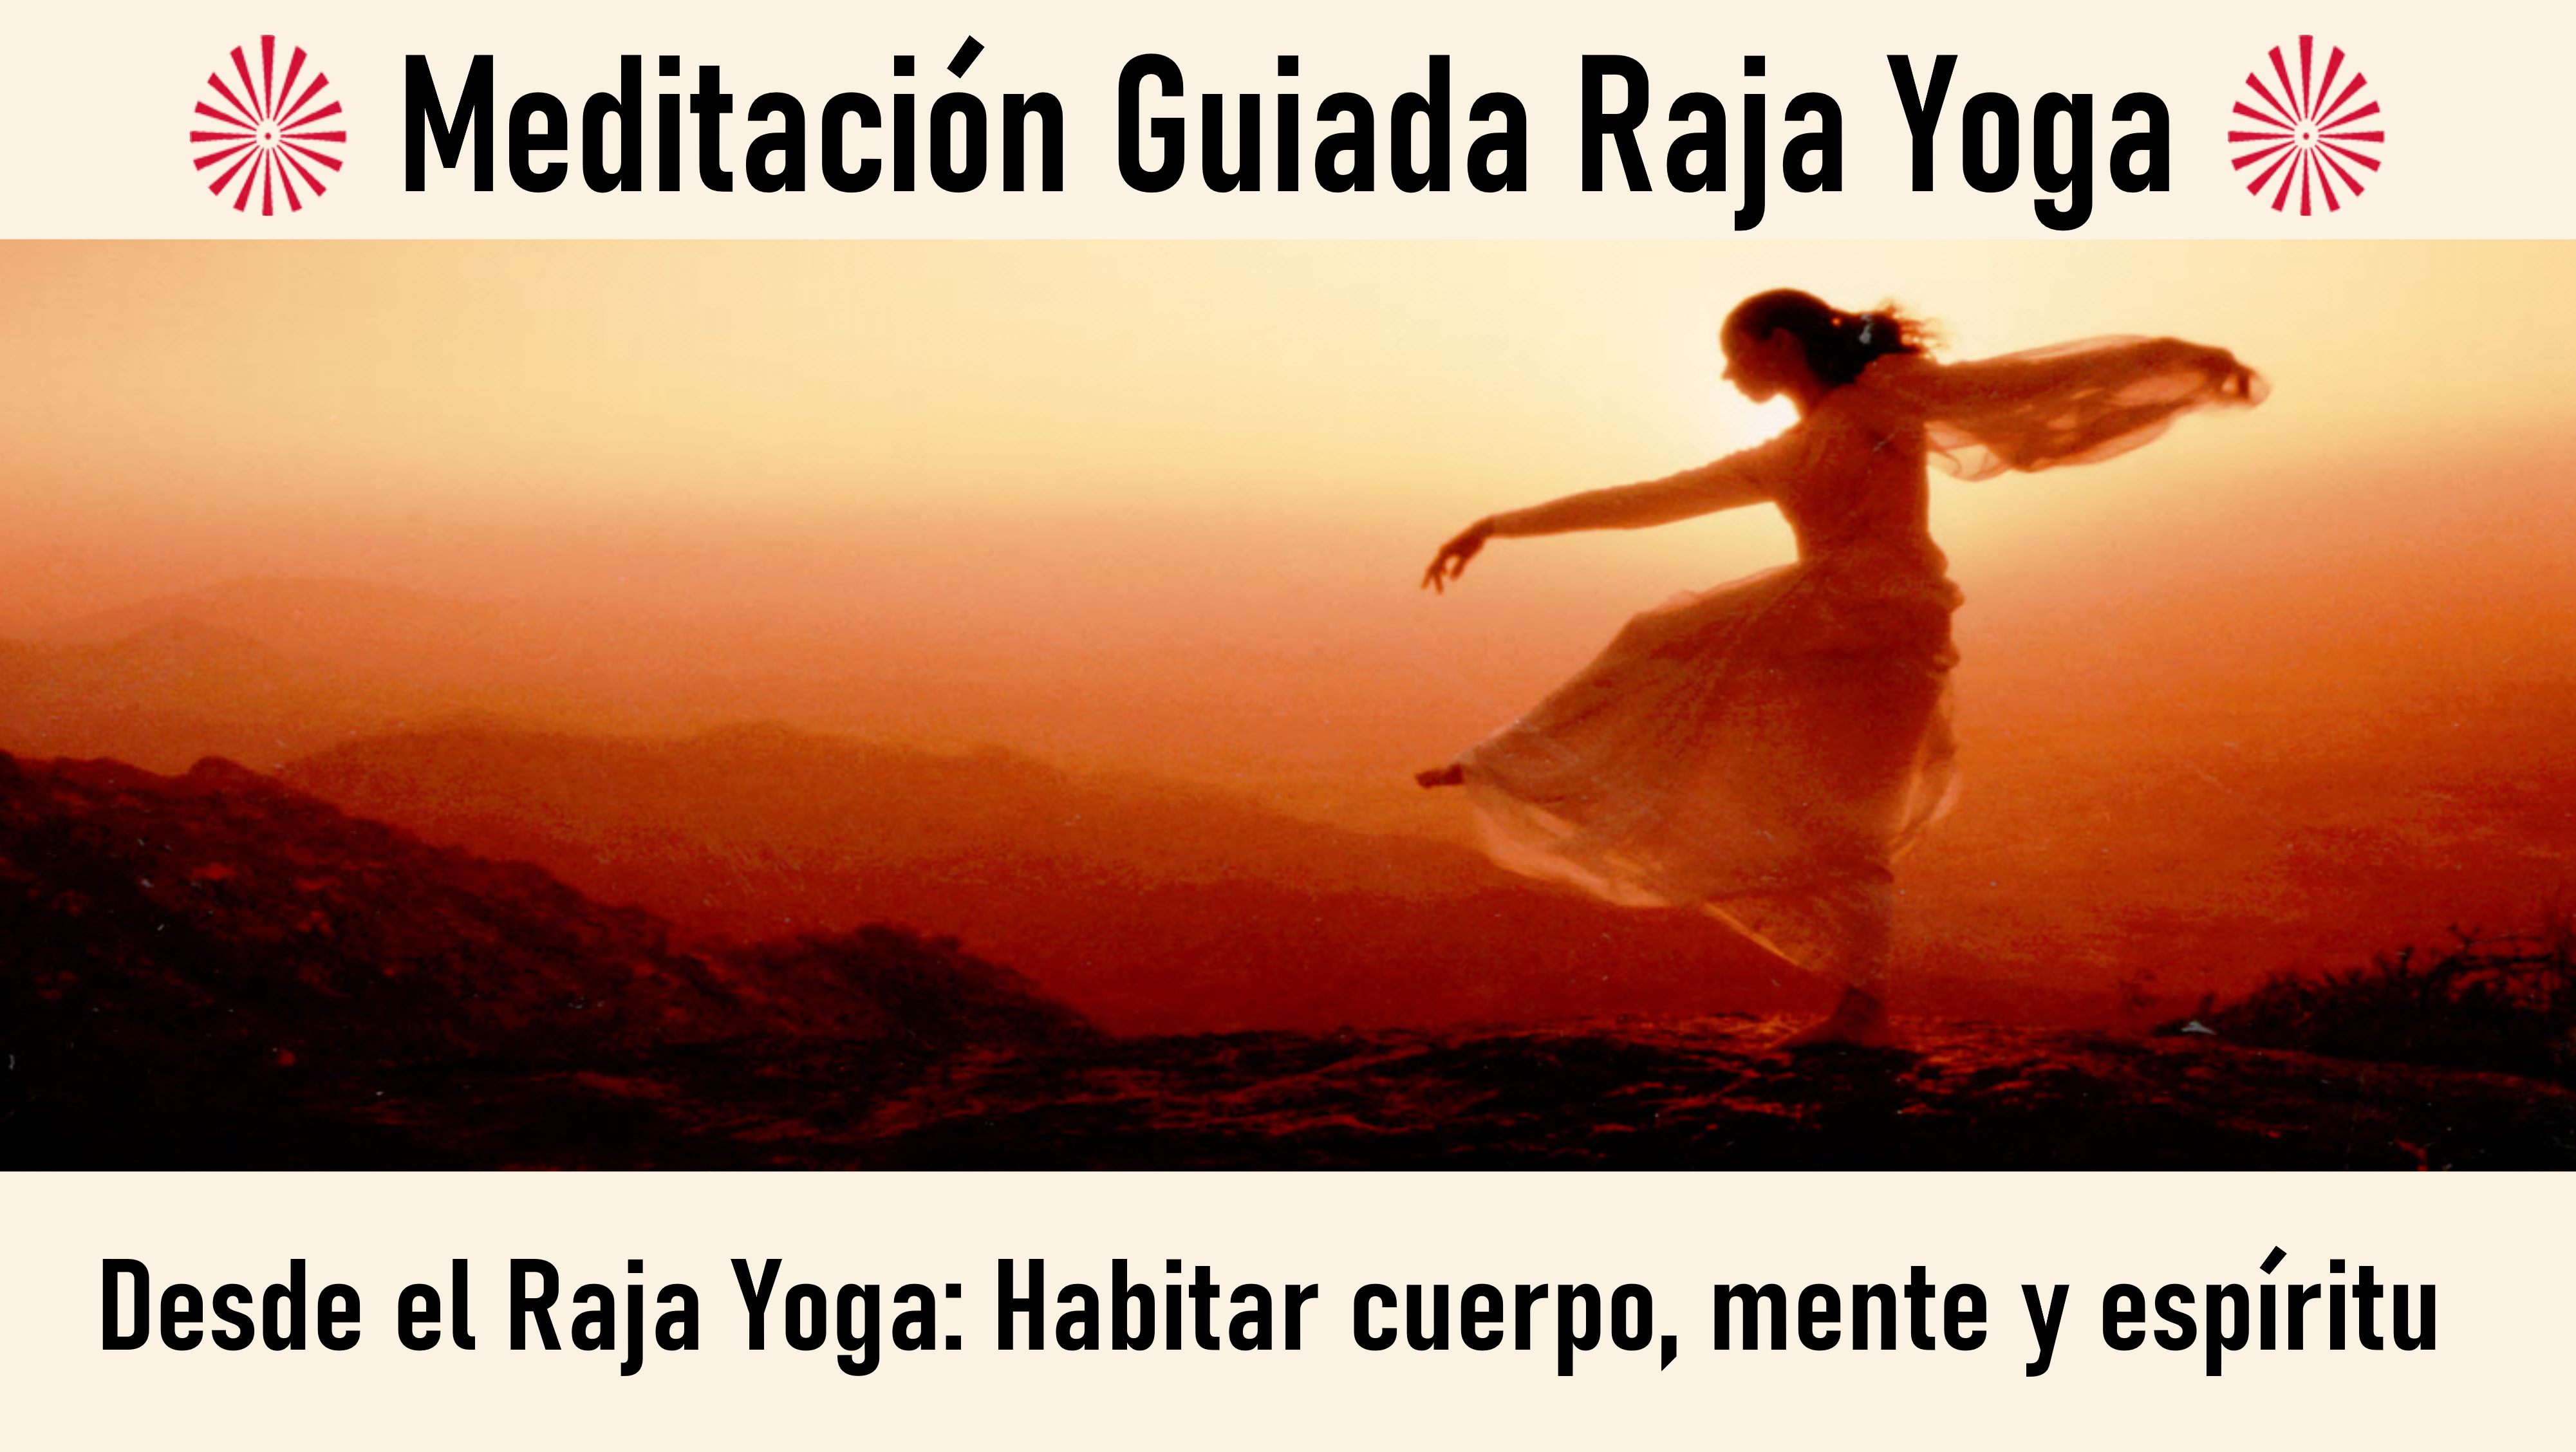 Meditación Raja Yoga: Desde el Raja Yoga, Habitar cuerpo, mente y espíritu (25 SEptiembre 2020) On-line desde Barcelona